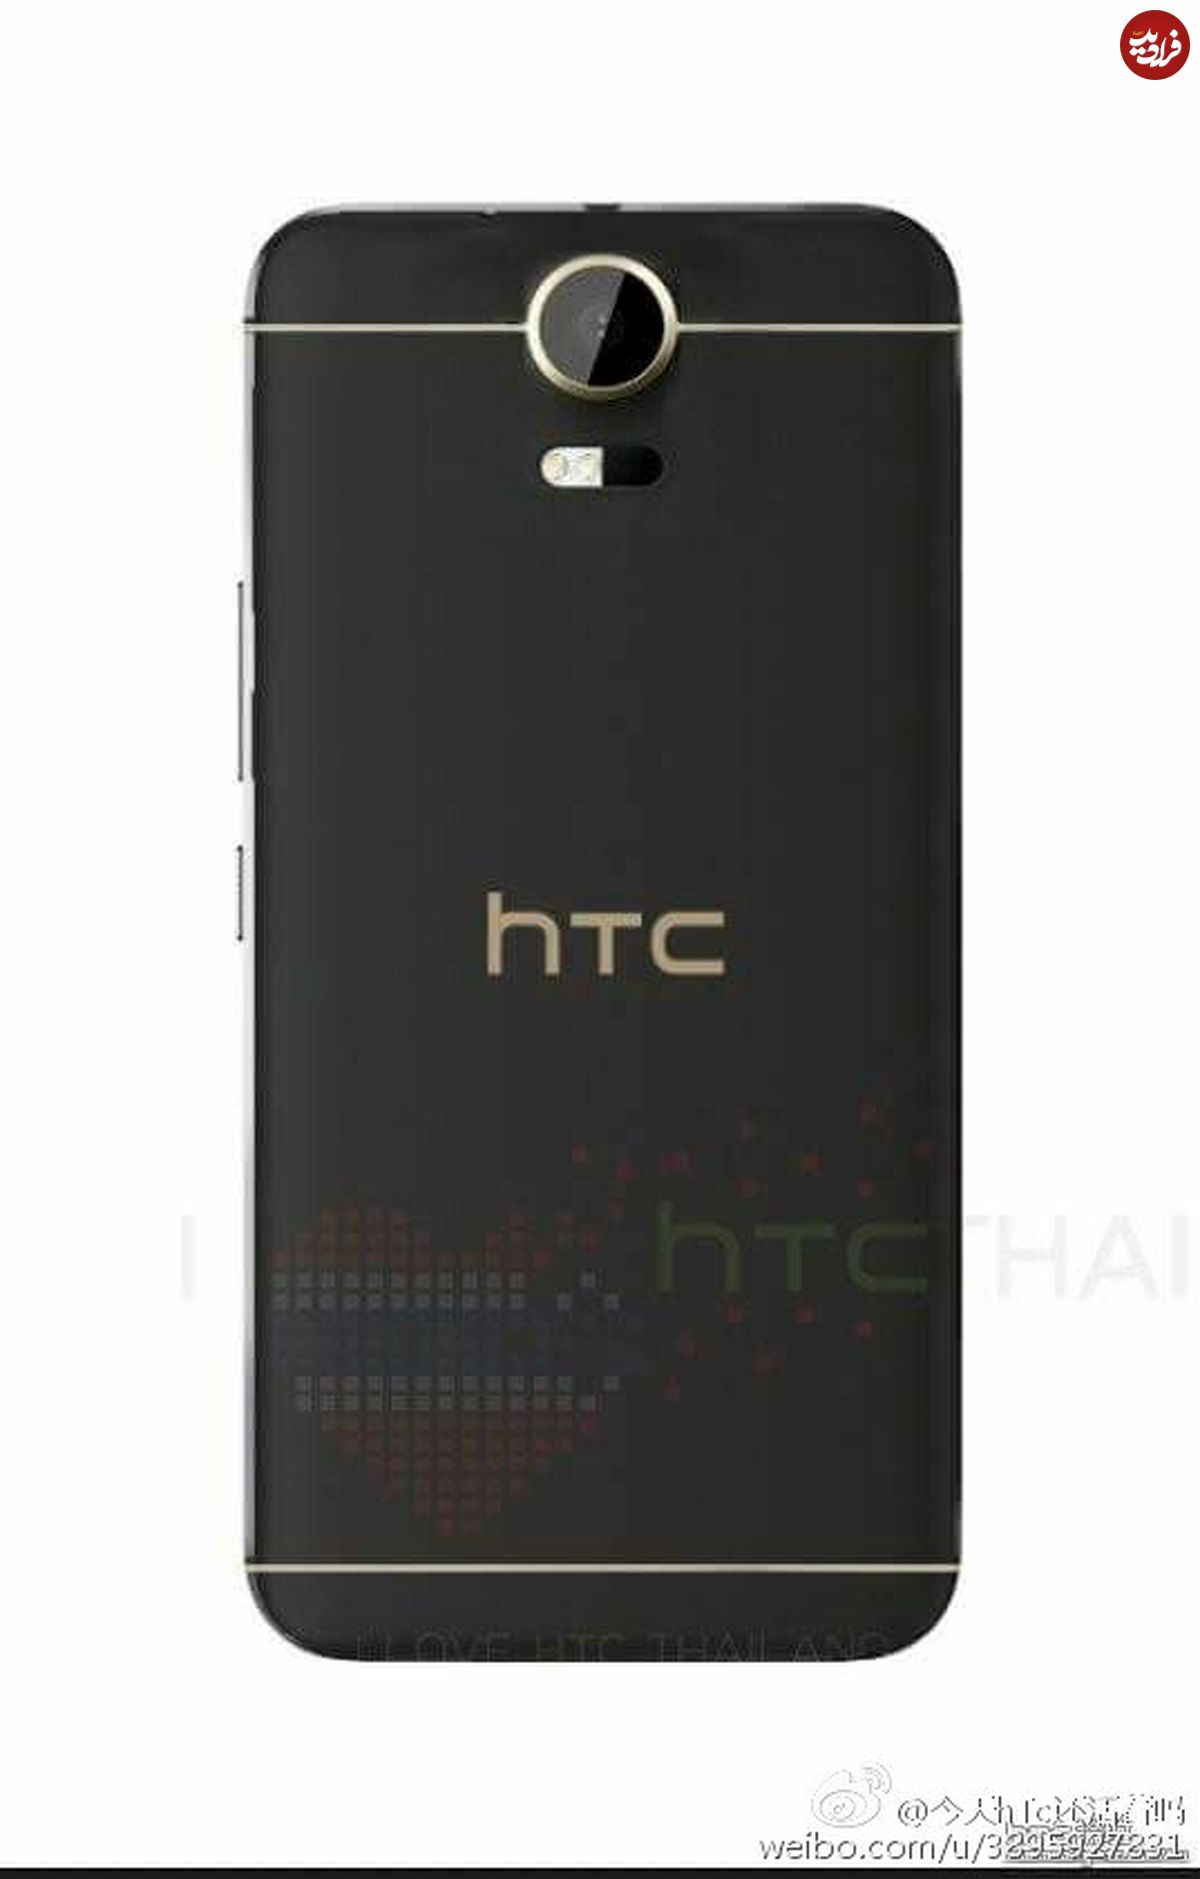 اولین تصویر از HTC Desire 10 لو رفت